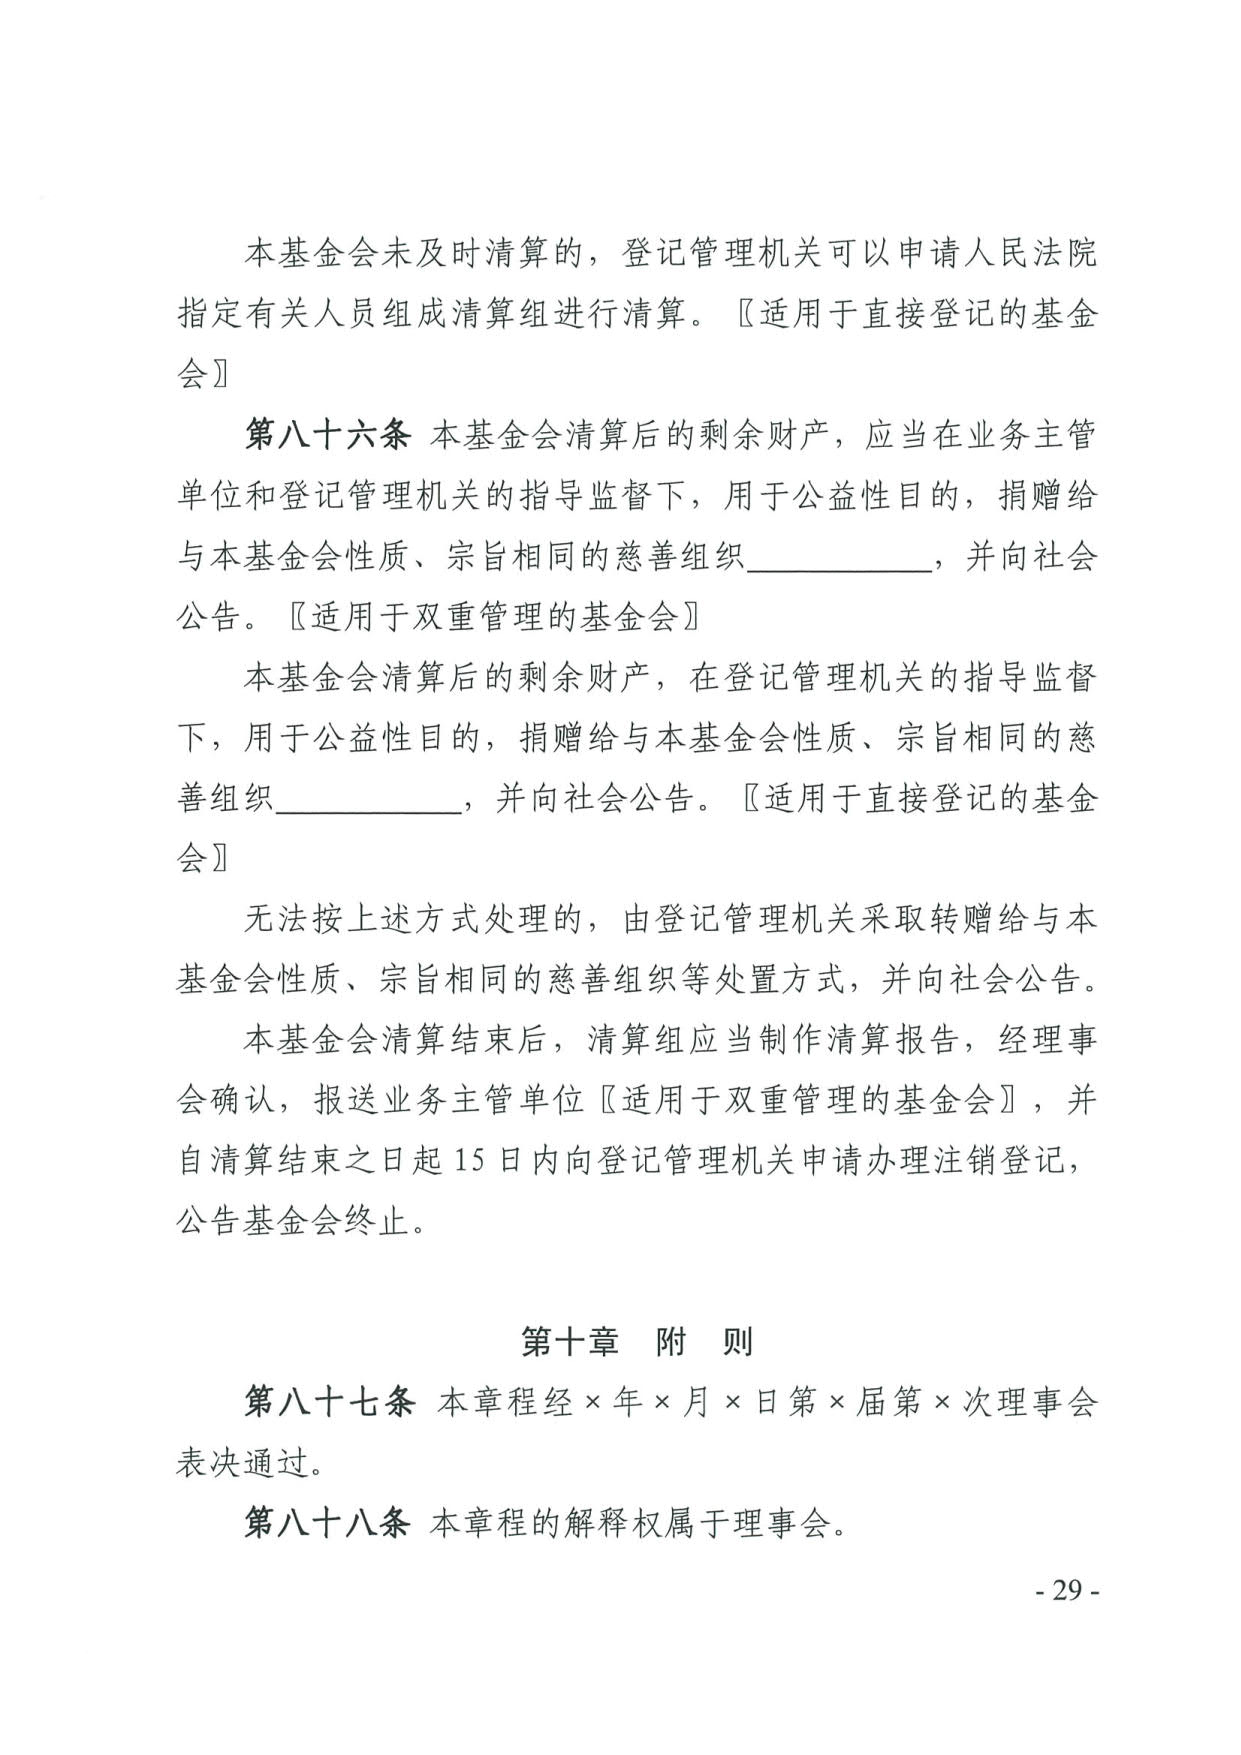 广东省民政厅关于印发《广东省基金会章程示范文本》的通知(4)_29.jpg